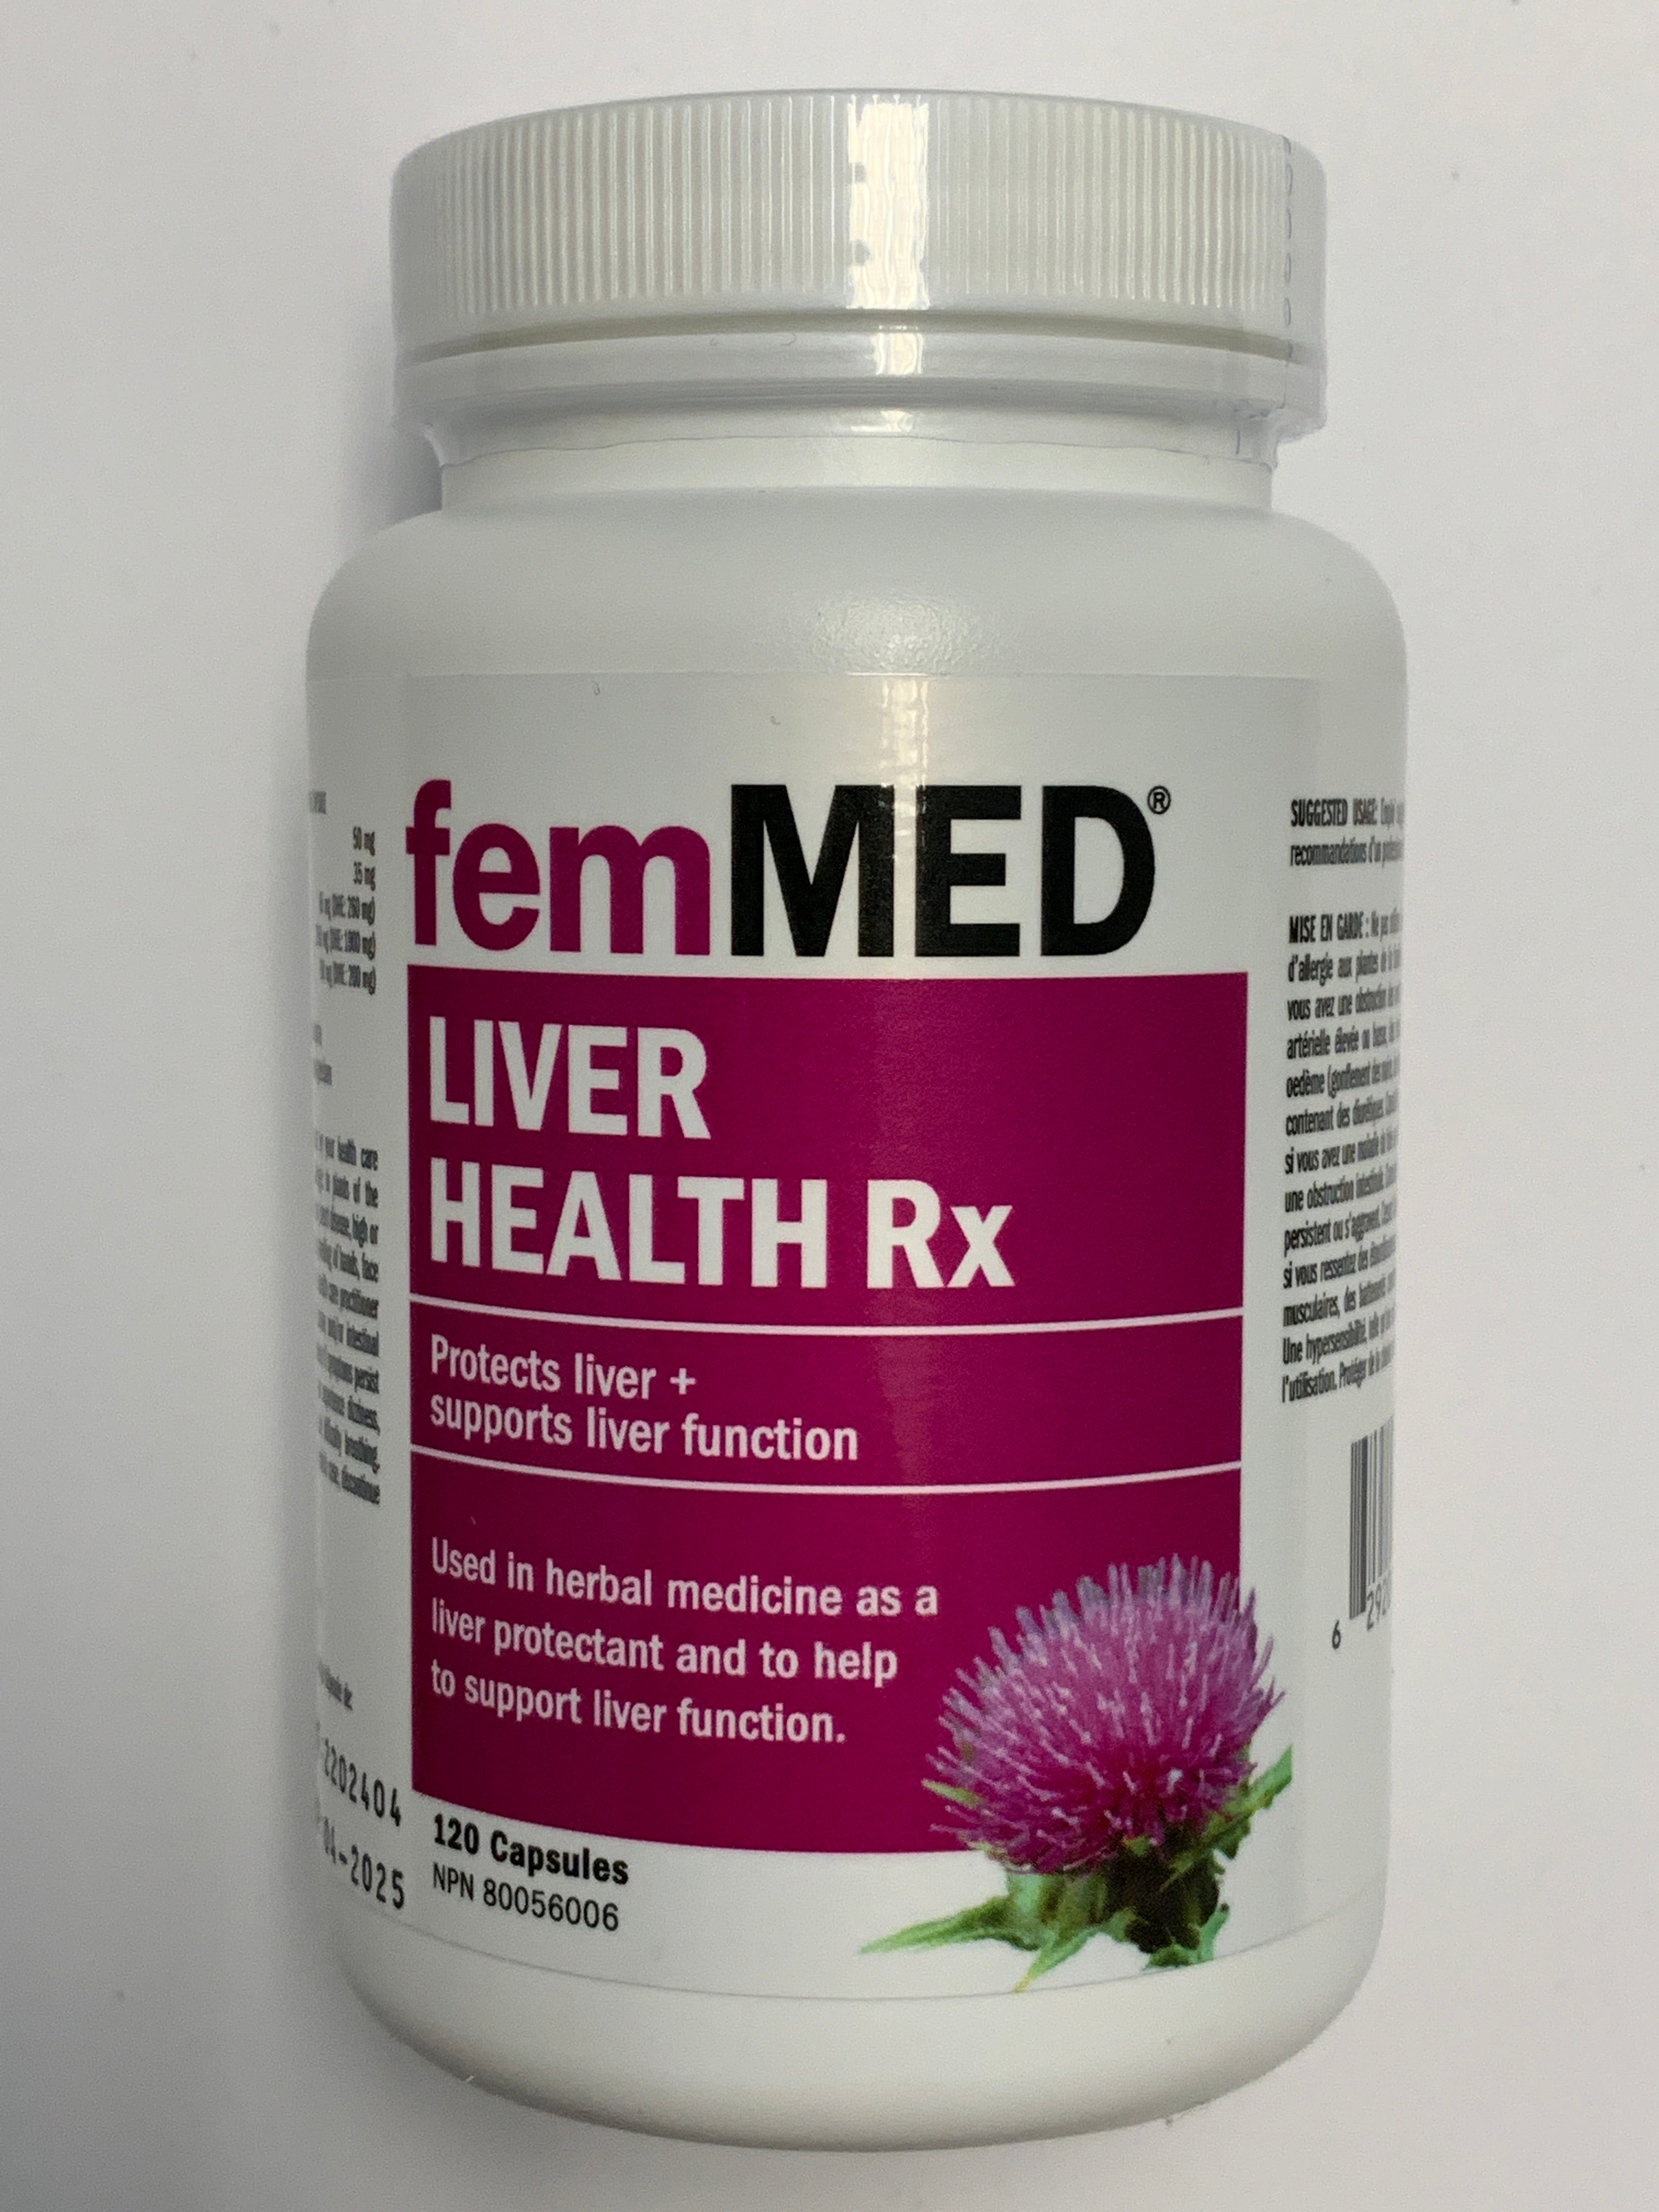 femMED Liver Health